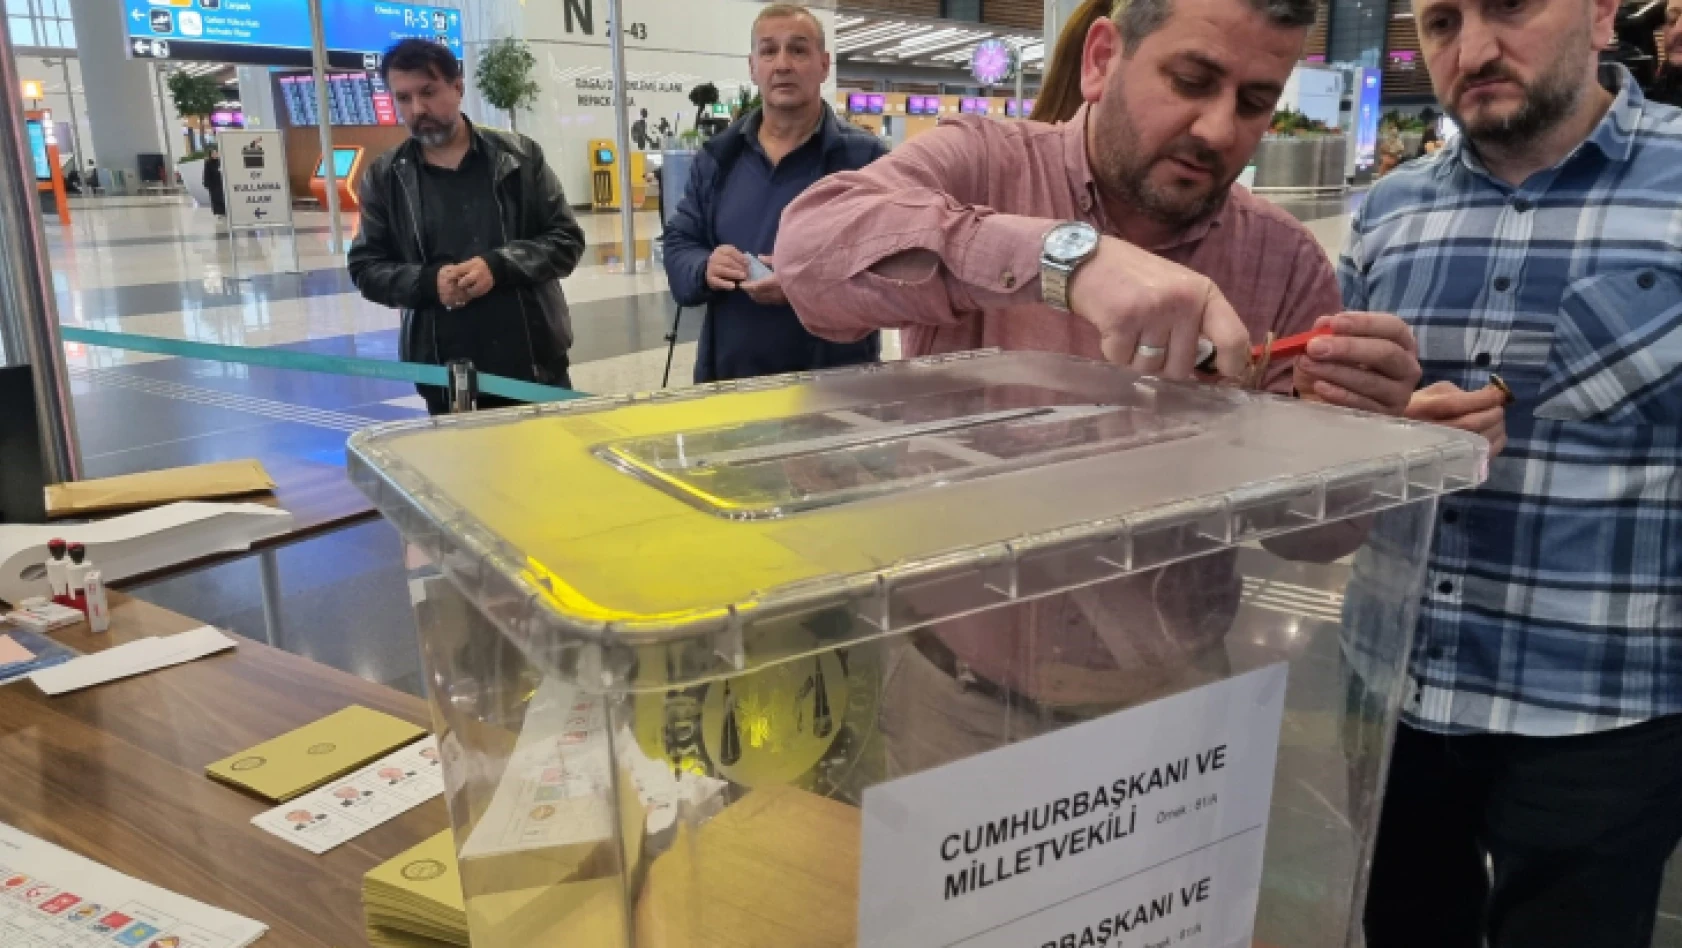 İstanbul Havalimanı'nda oy verme işlemi başladı